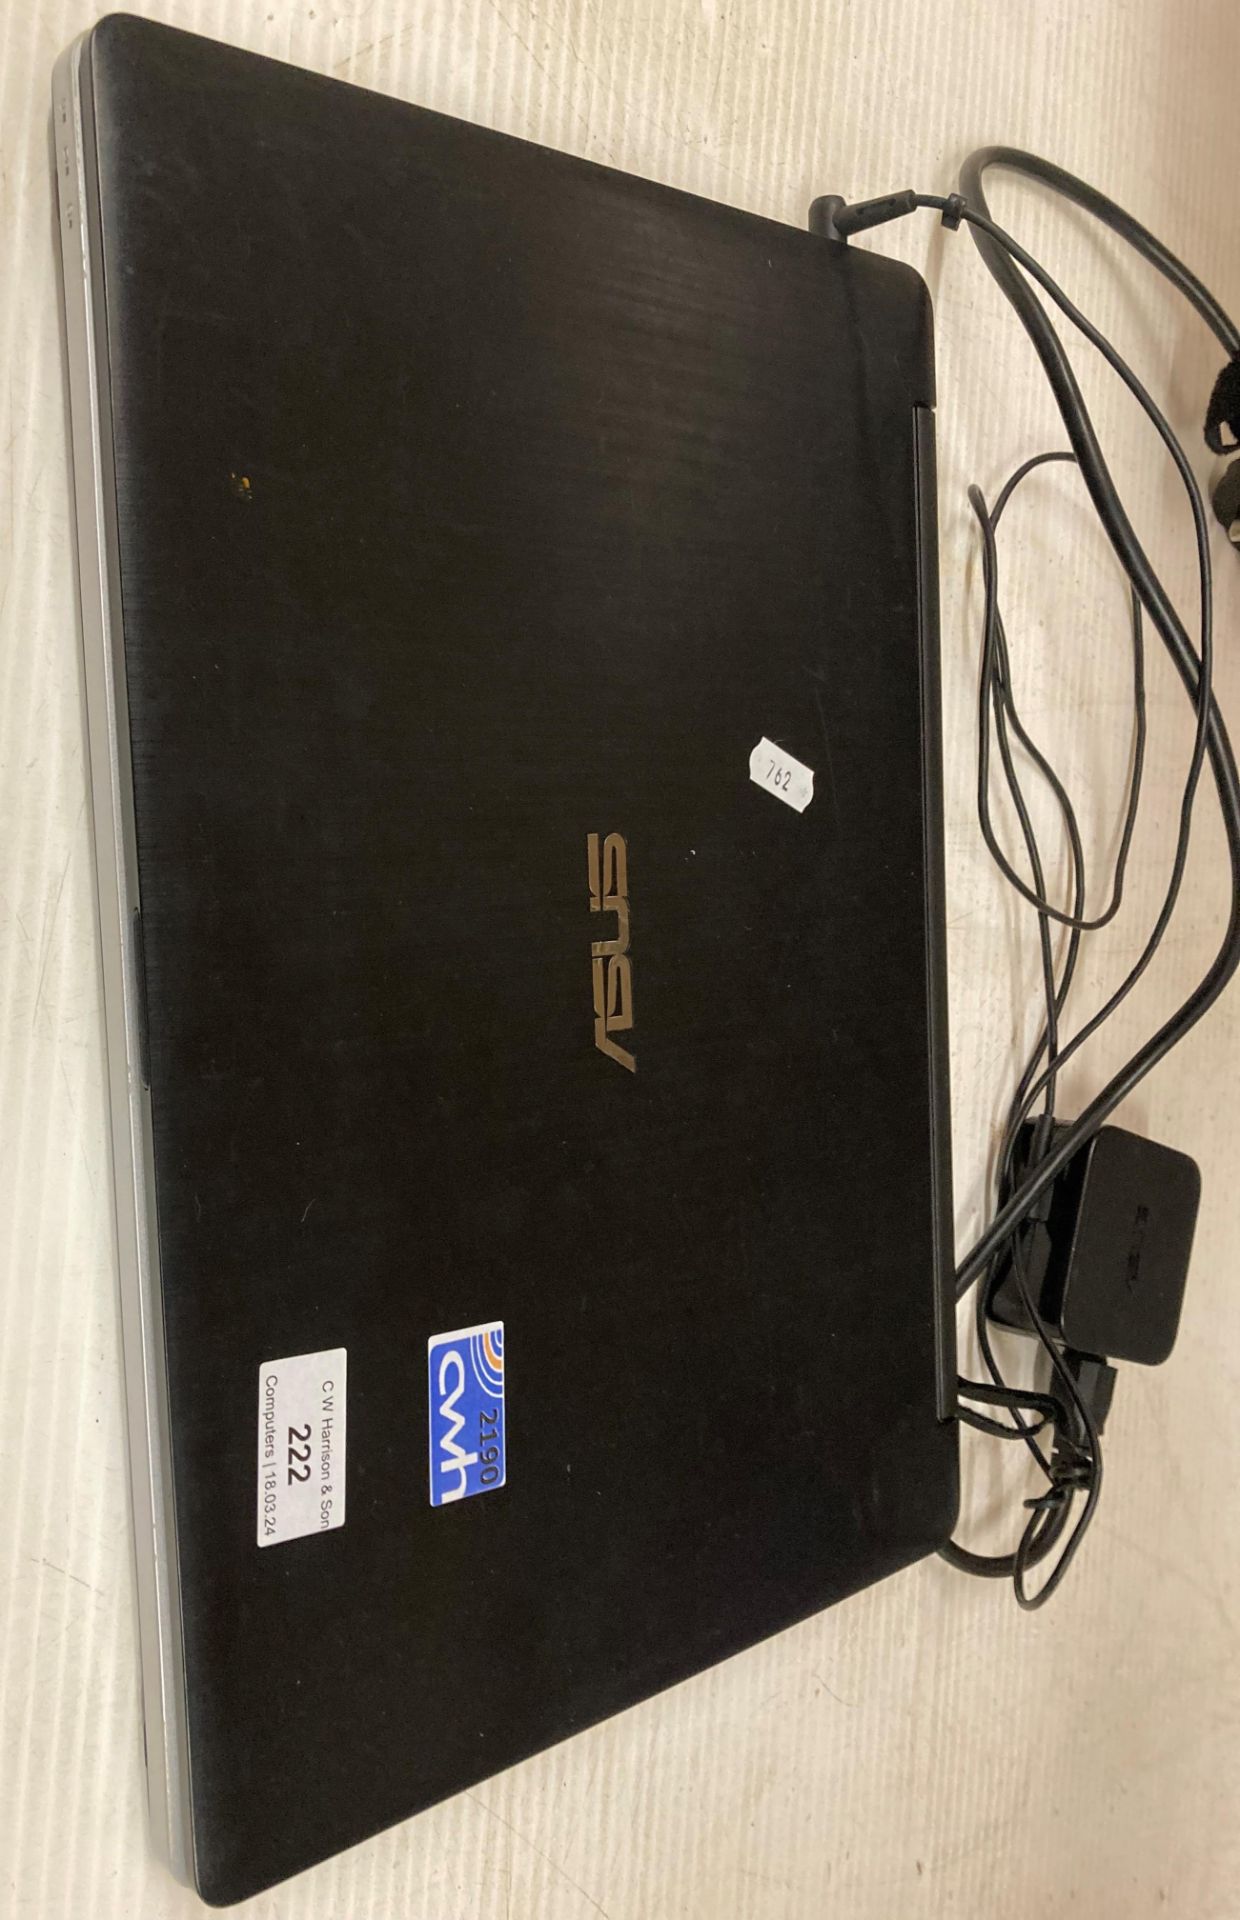 Asus laptop I5-4200U complete with power lead (saleroom location: F10)